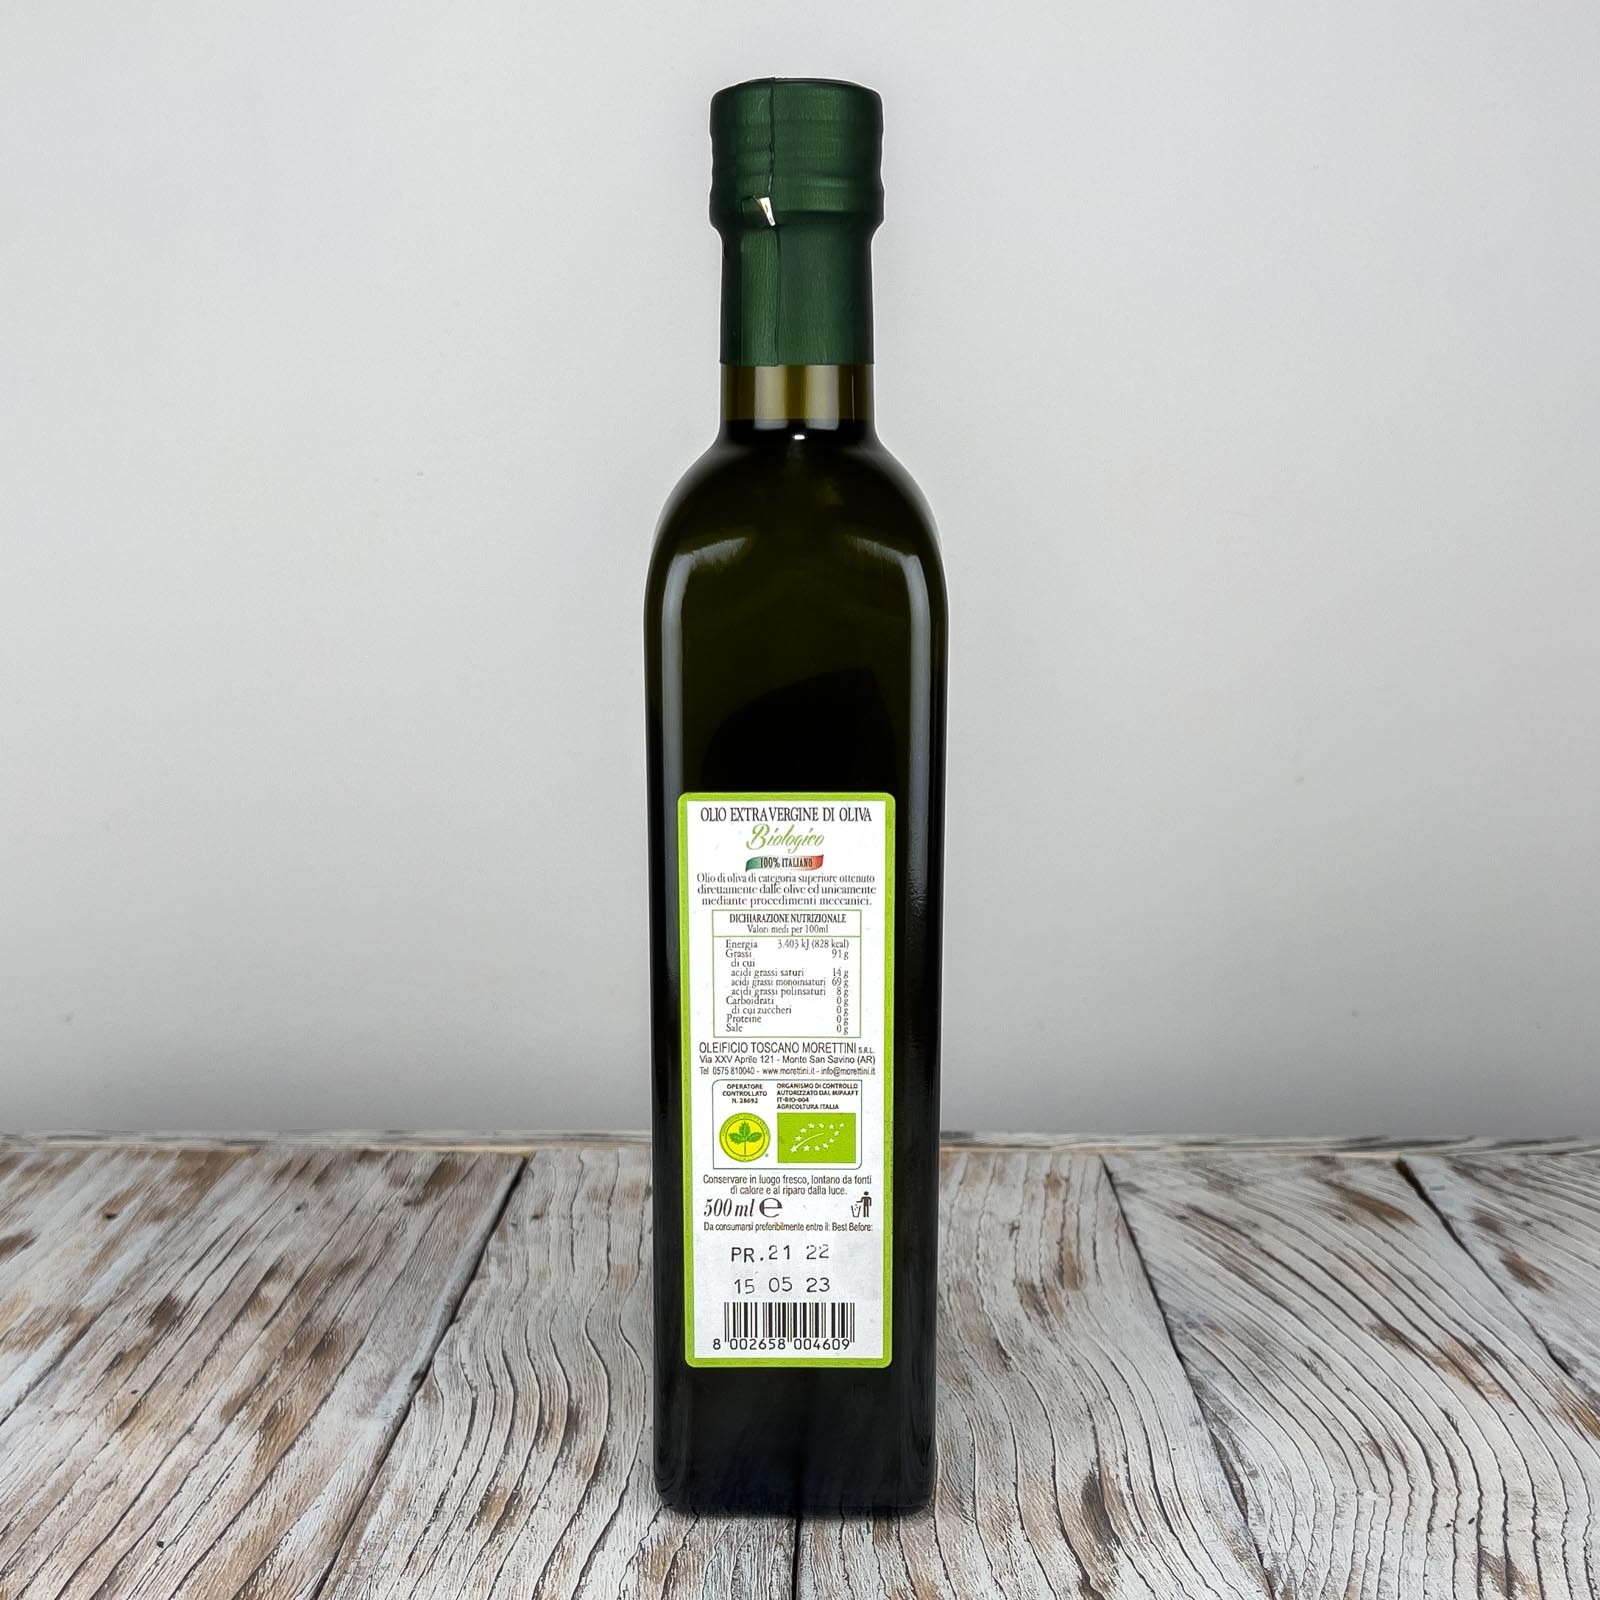 Bioliva, olio extra vergine di oliva biologico 100% italiano di altissima qualità, ottenuto direttamente dalle olive ed unicamente mediante procedimenti meccanici - Anno di produzione 2021/2022.